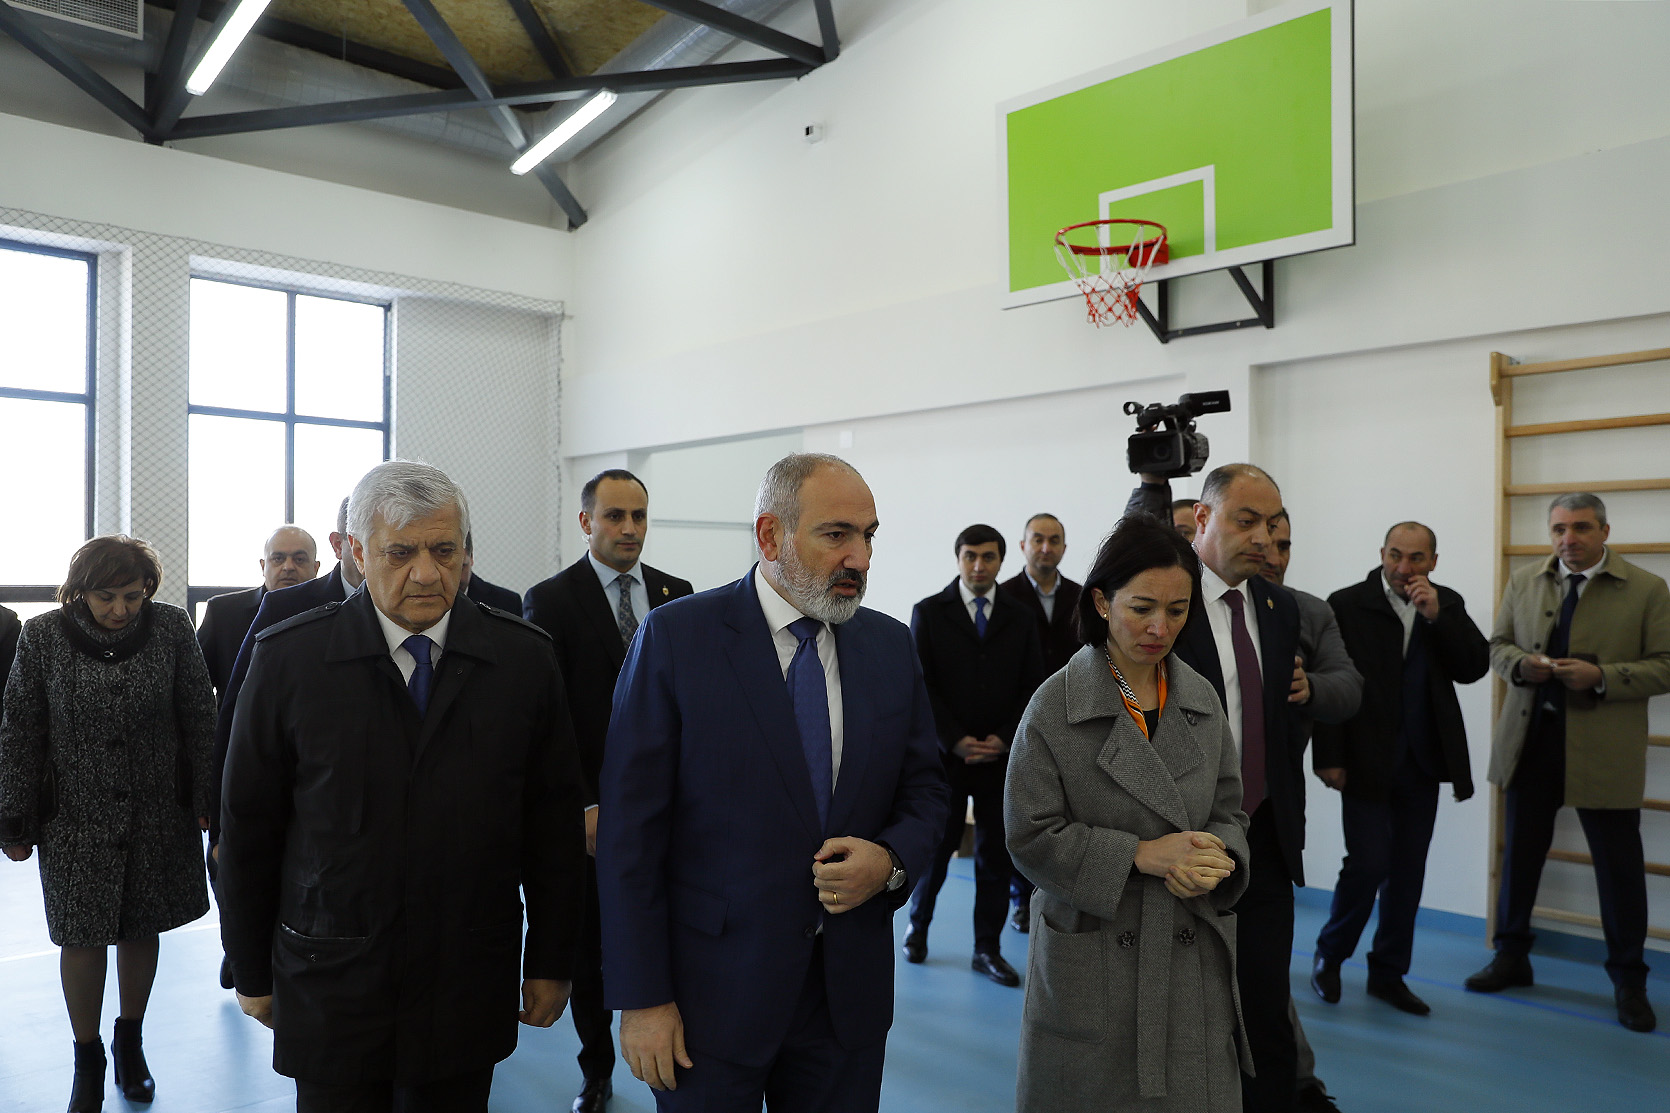 Տպավորություններս դրական են. ՀՀ վարչապետն այցելել է Մեդովկա բնակավայրի նորակառույց դպրոց